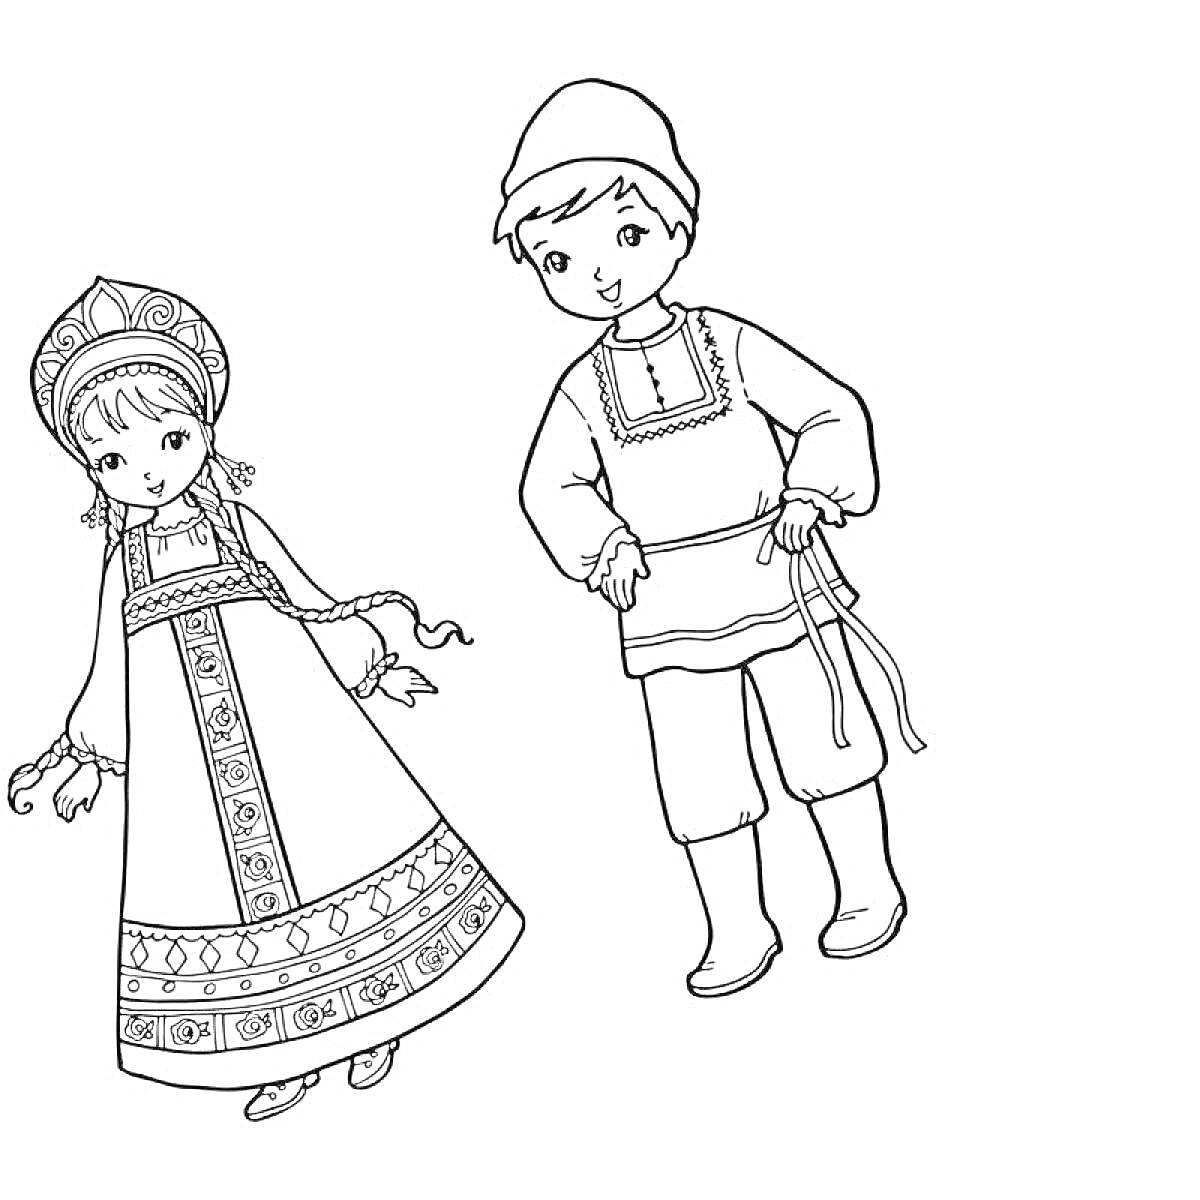 Раскраска Мальчик и девочка в русском народном костюме. Девочка одета в кокошник, сарафан с вышивкой и туфли. Мальчик в рубахе с вышитым воротом, штанах и сапогах.